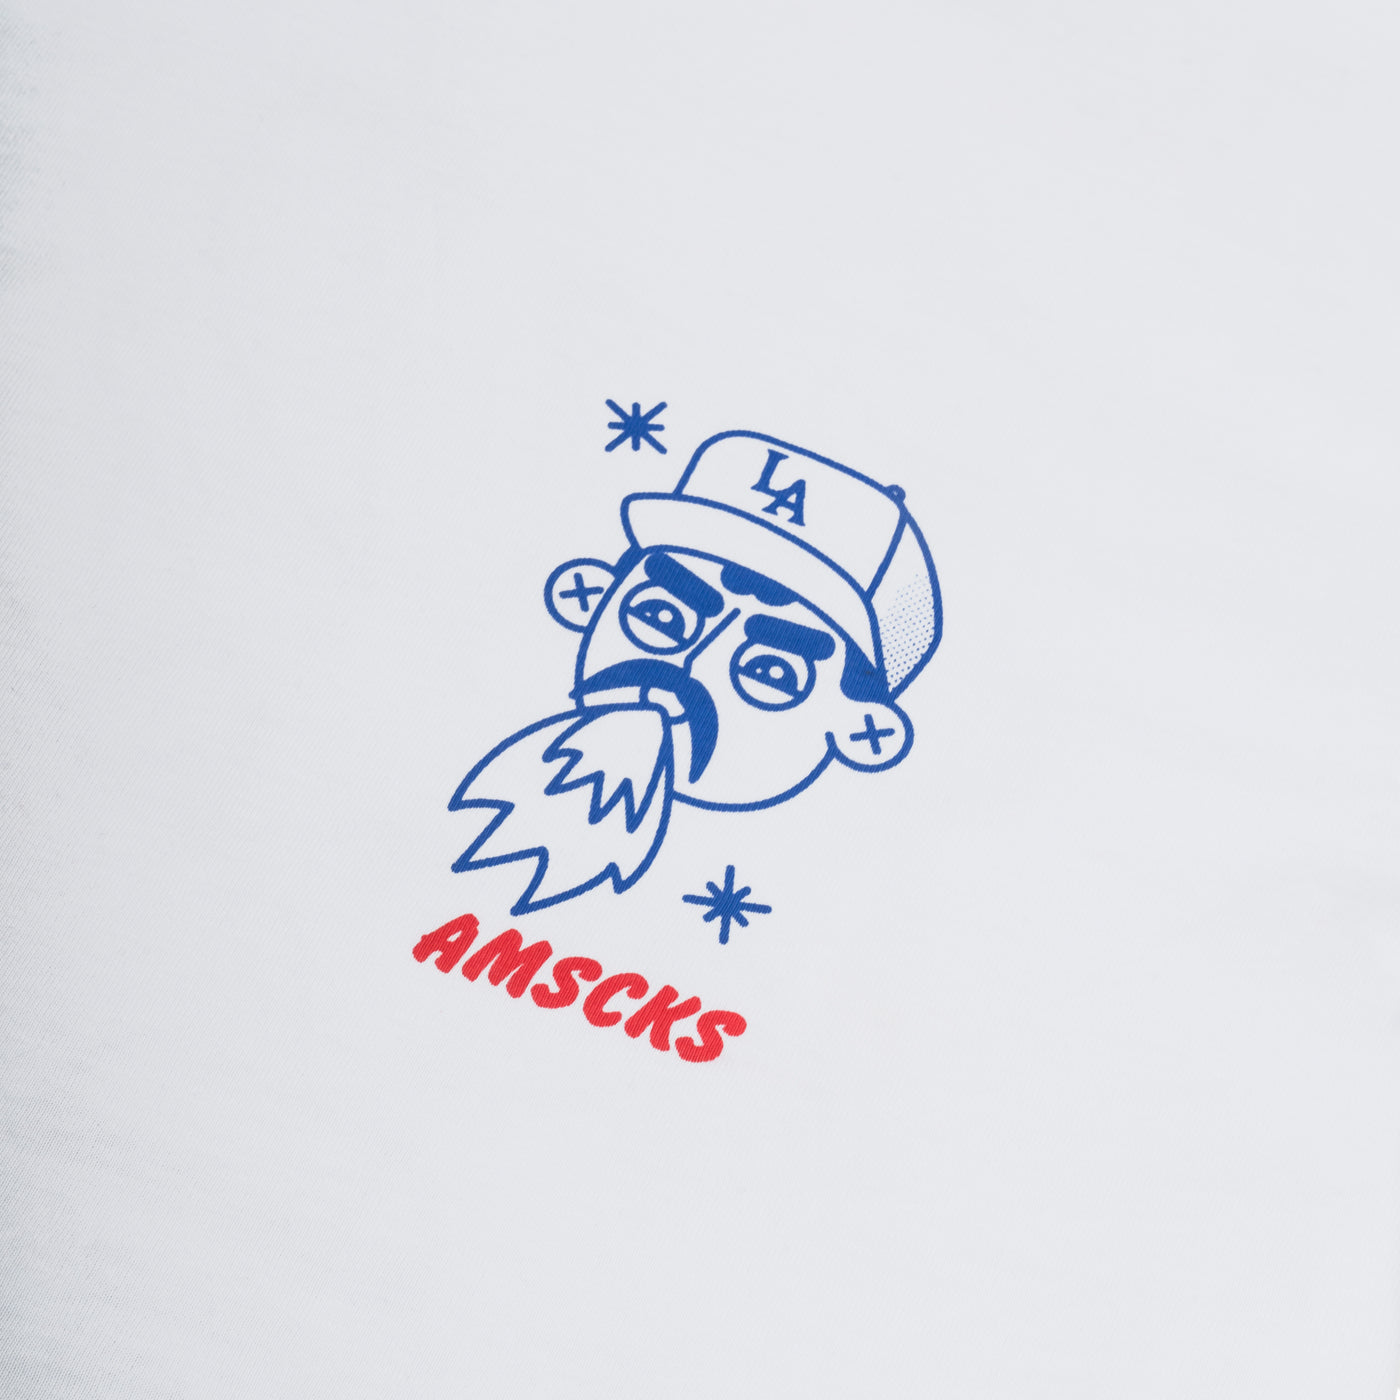 Tacos & Vatos - Camiseta